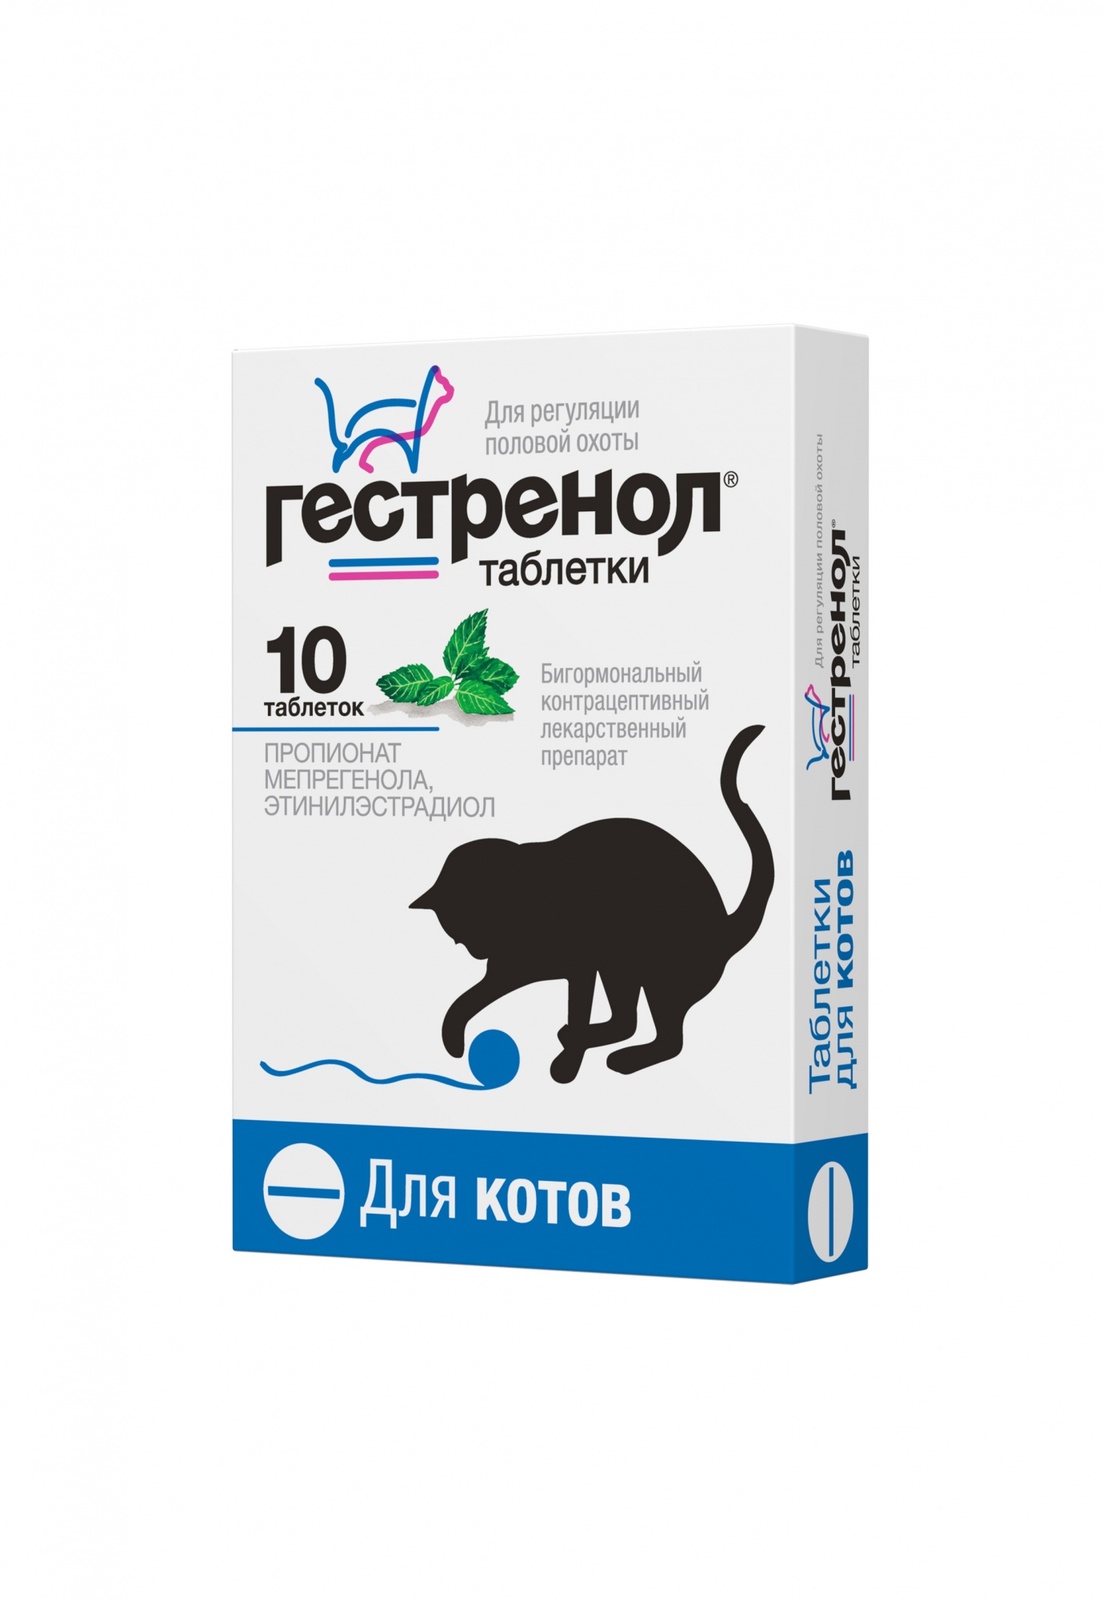 Астрафарм гестренол таблетки для котов для регуляции половой охоты, 10 таб. (7 г)